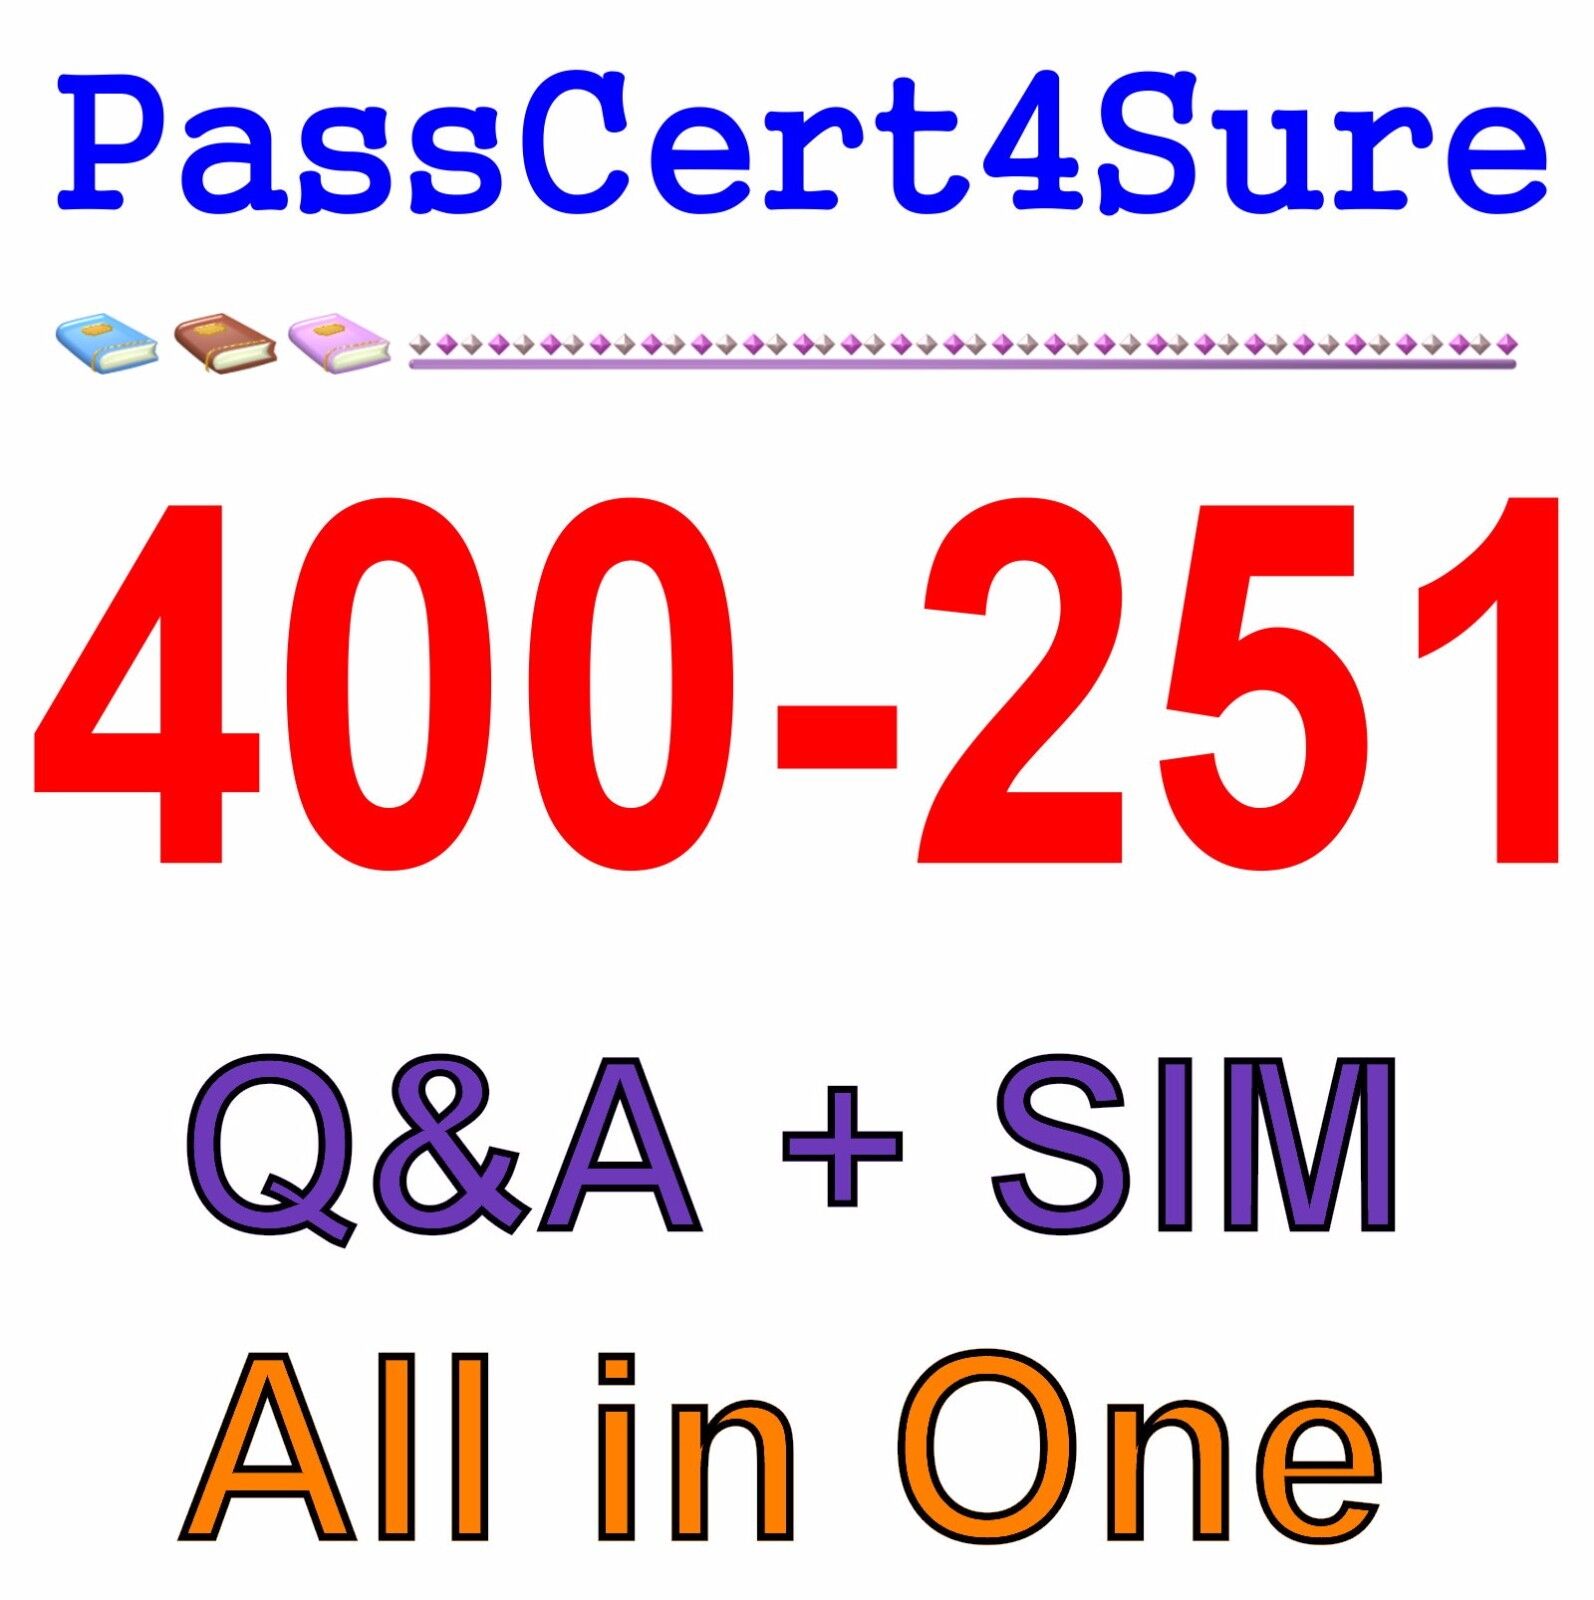 Cisco Best Practice Material For 400-251 Exam Q&A+SIM